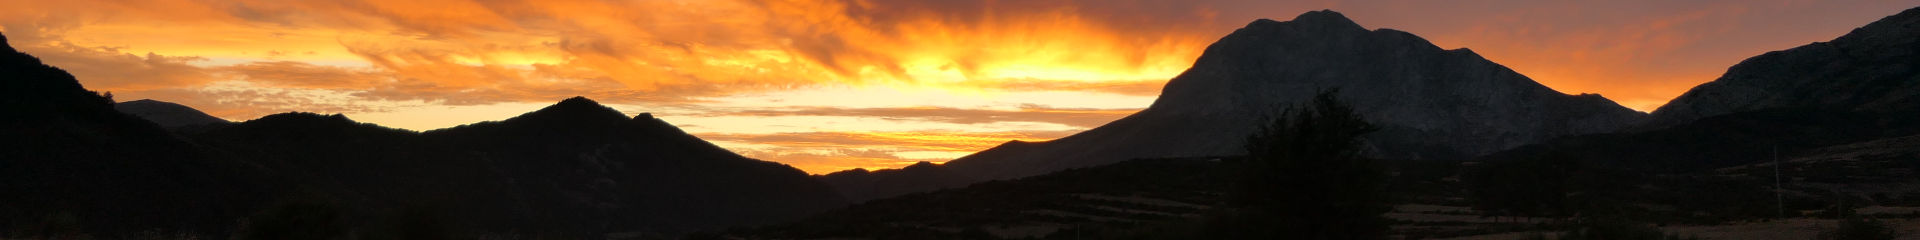 Photo du coucher de soleil prise depuis le mirador de Alba en Espagne. | Cliquer pour agrandir